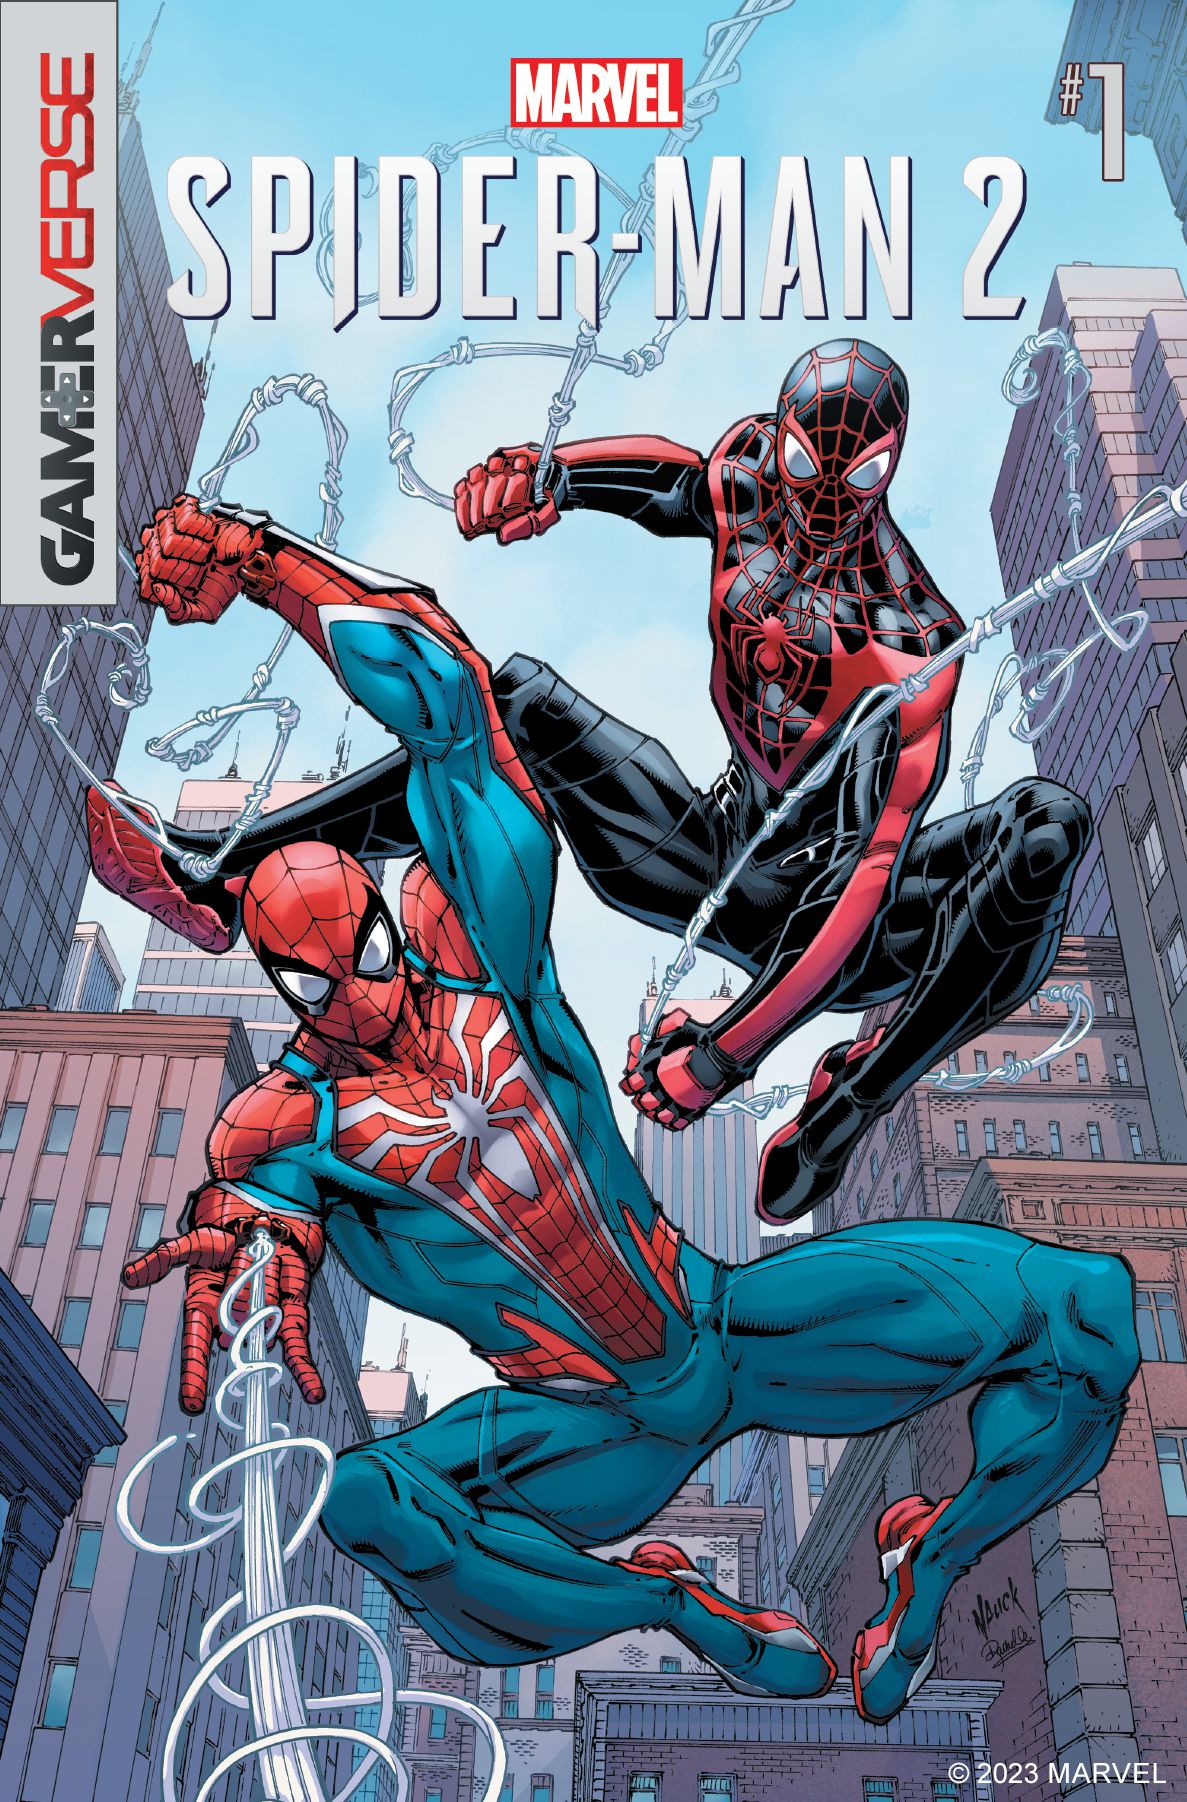 Spider-Man (Peter Parker) e Spider-Man (Miles Morales) attraversano le strade della città sulla copertina di Spider-Man 2 #1.